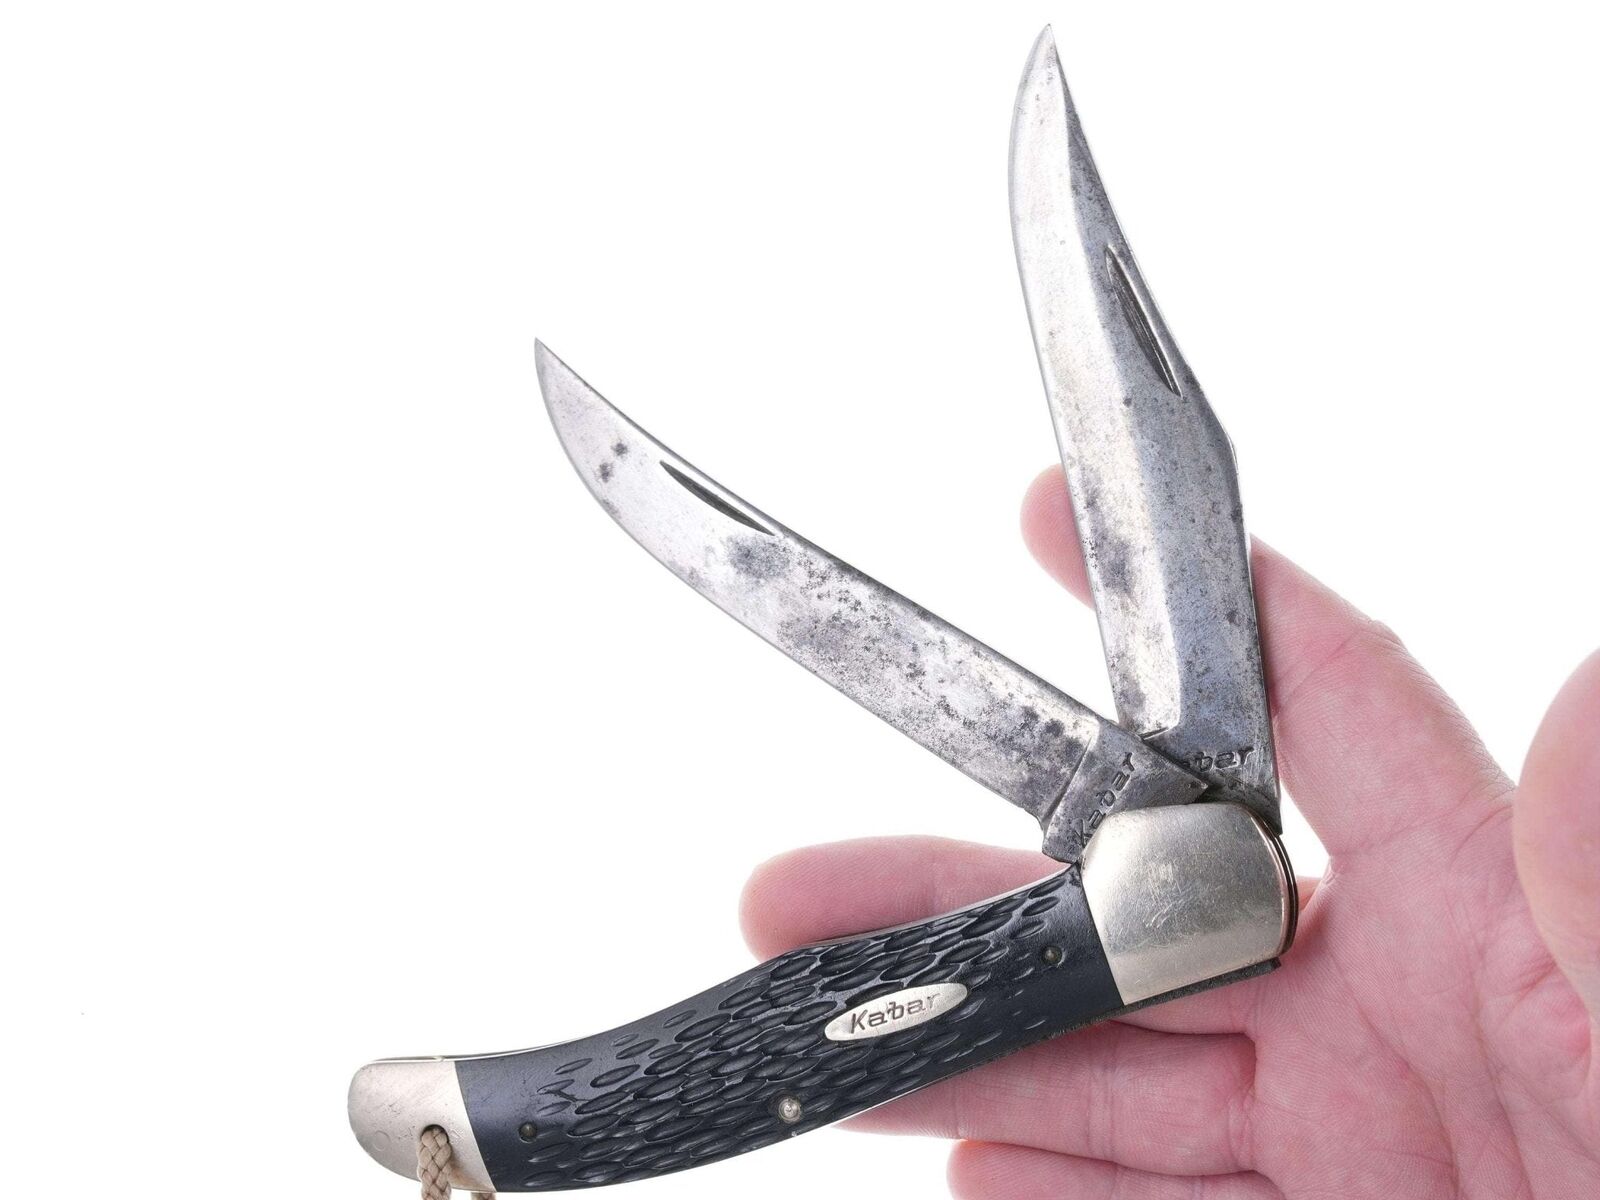 Large Vintage Kabar Pocket knife